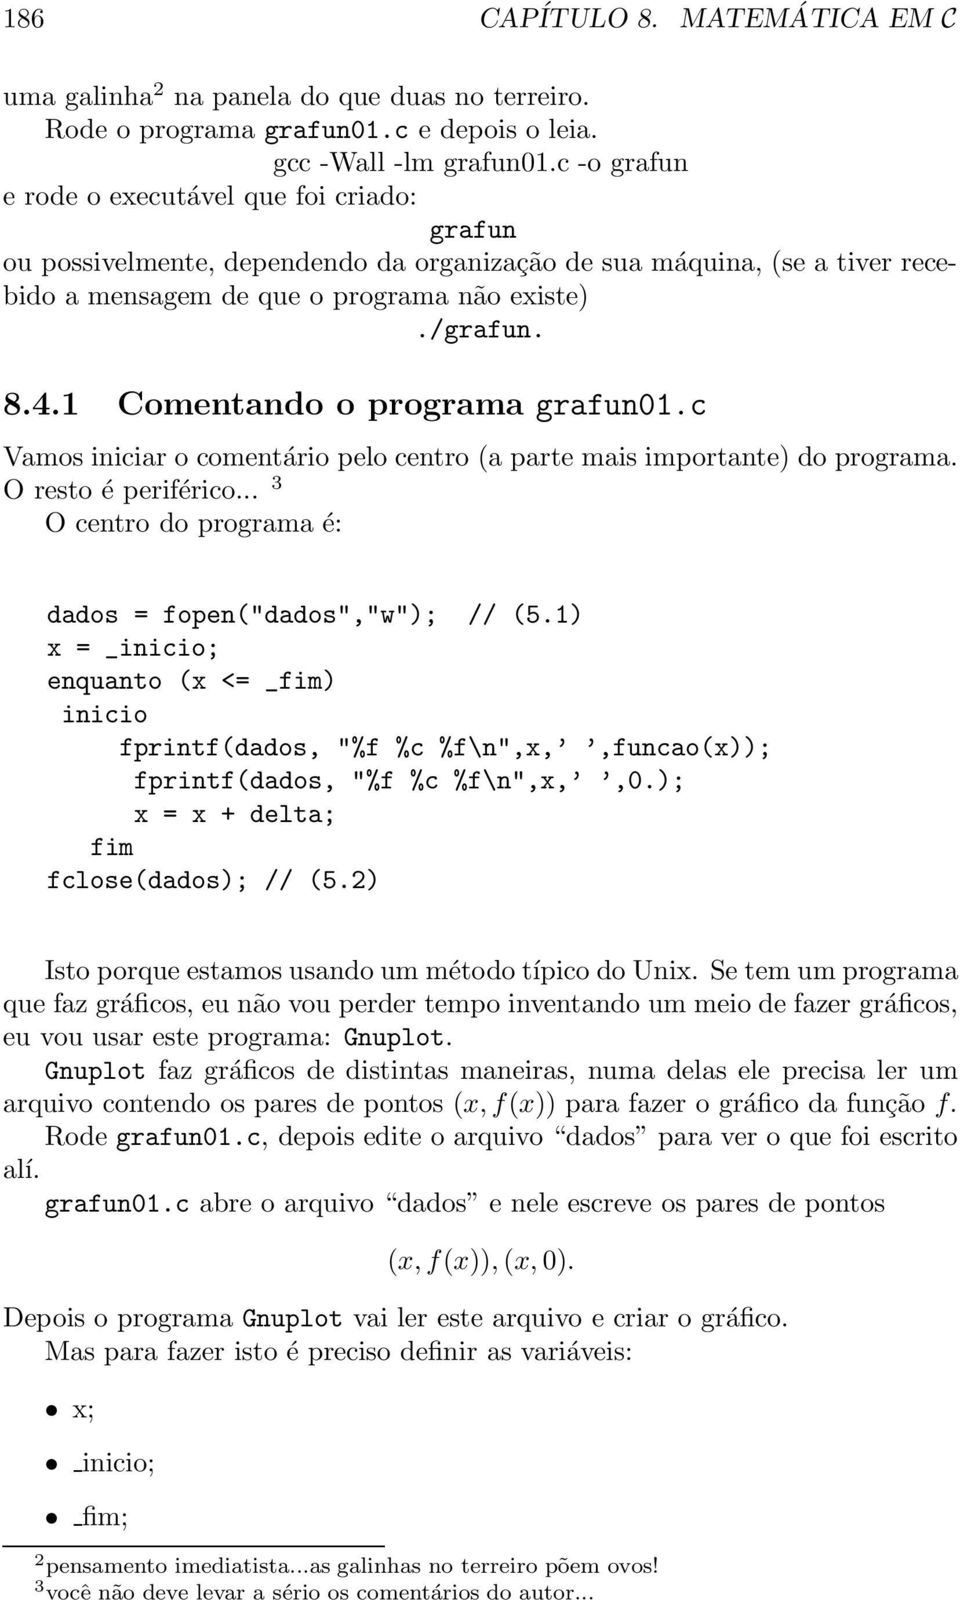 1 Comentando o programa grafun01.c Vamos iniciar o comentário pelo centro (a parte mais importante) do programa. O resto é periférico... 3 O centro do programa é: dados = fopen("dados","w"); // (5.